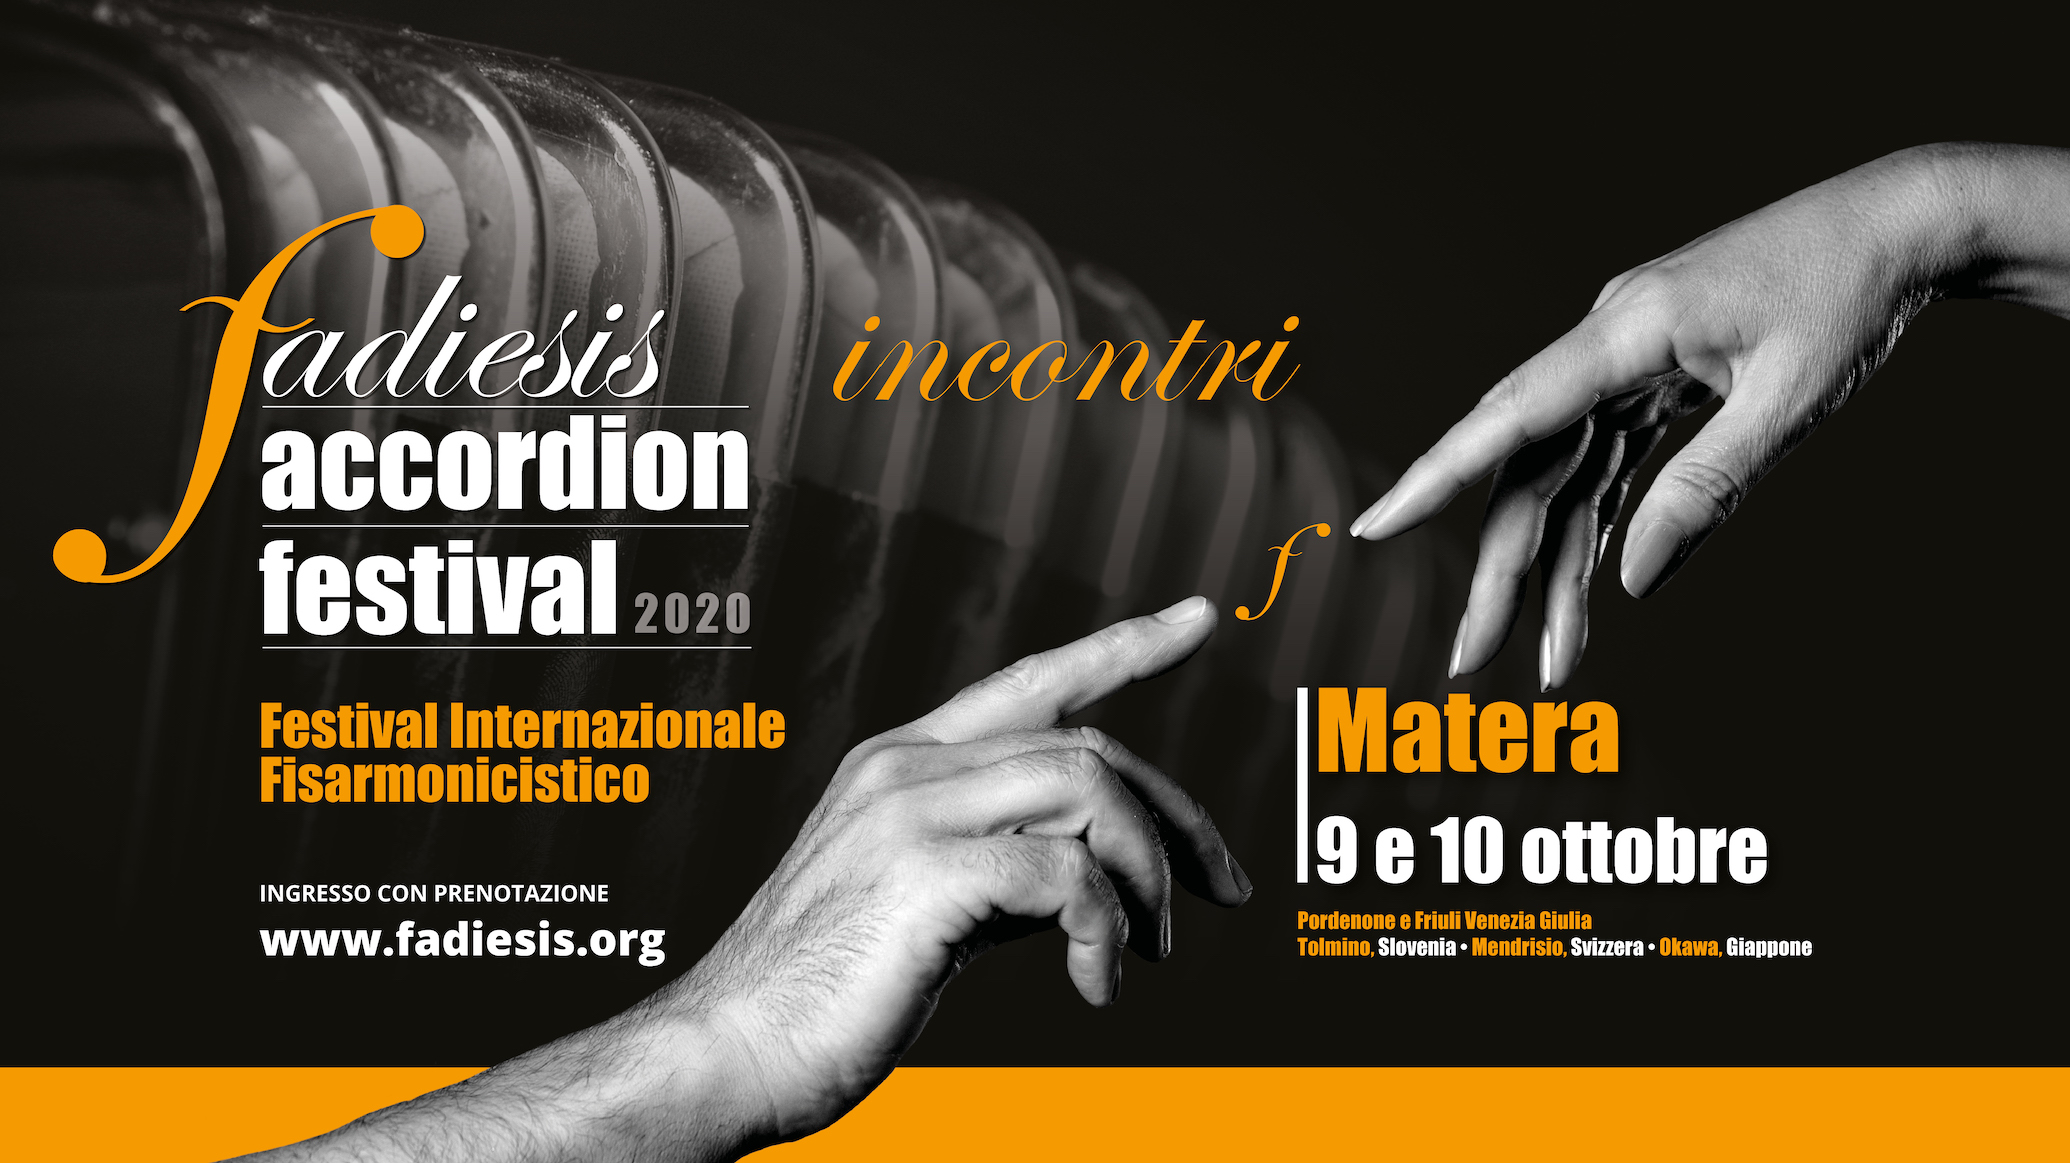 Fadiesis Accordion Festival, con due concerti a Matera si apre la decima edizione della rassegna fisarminocistica